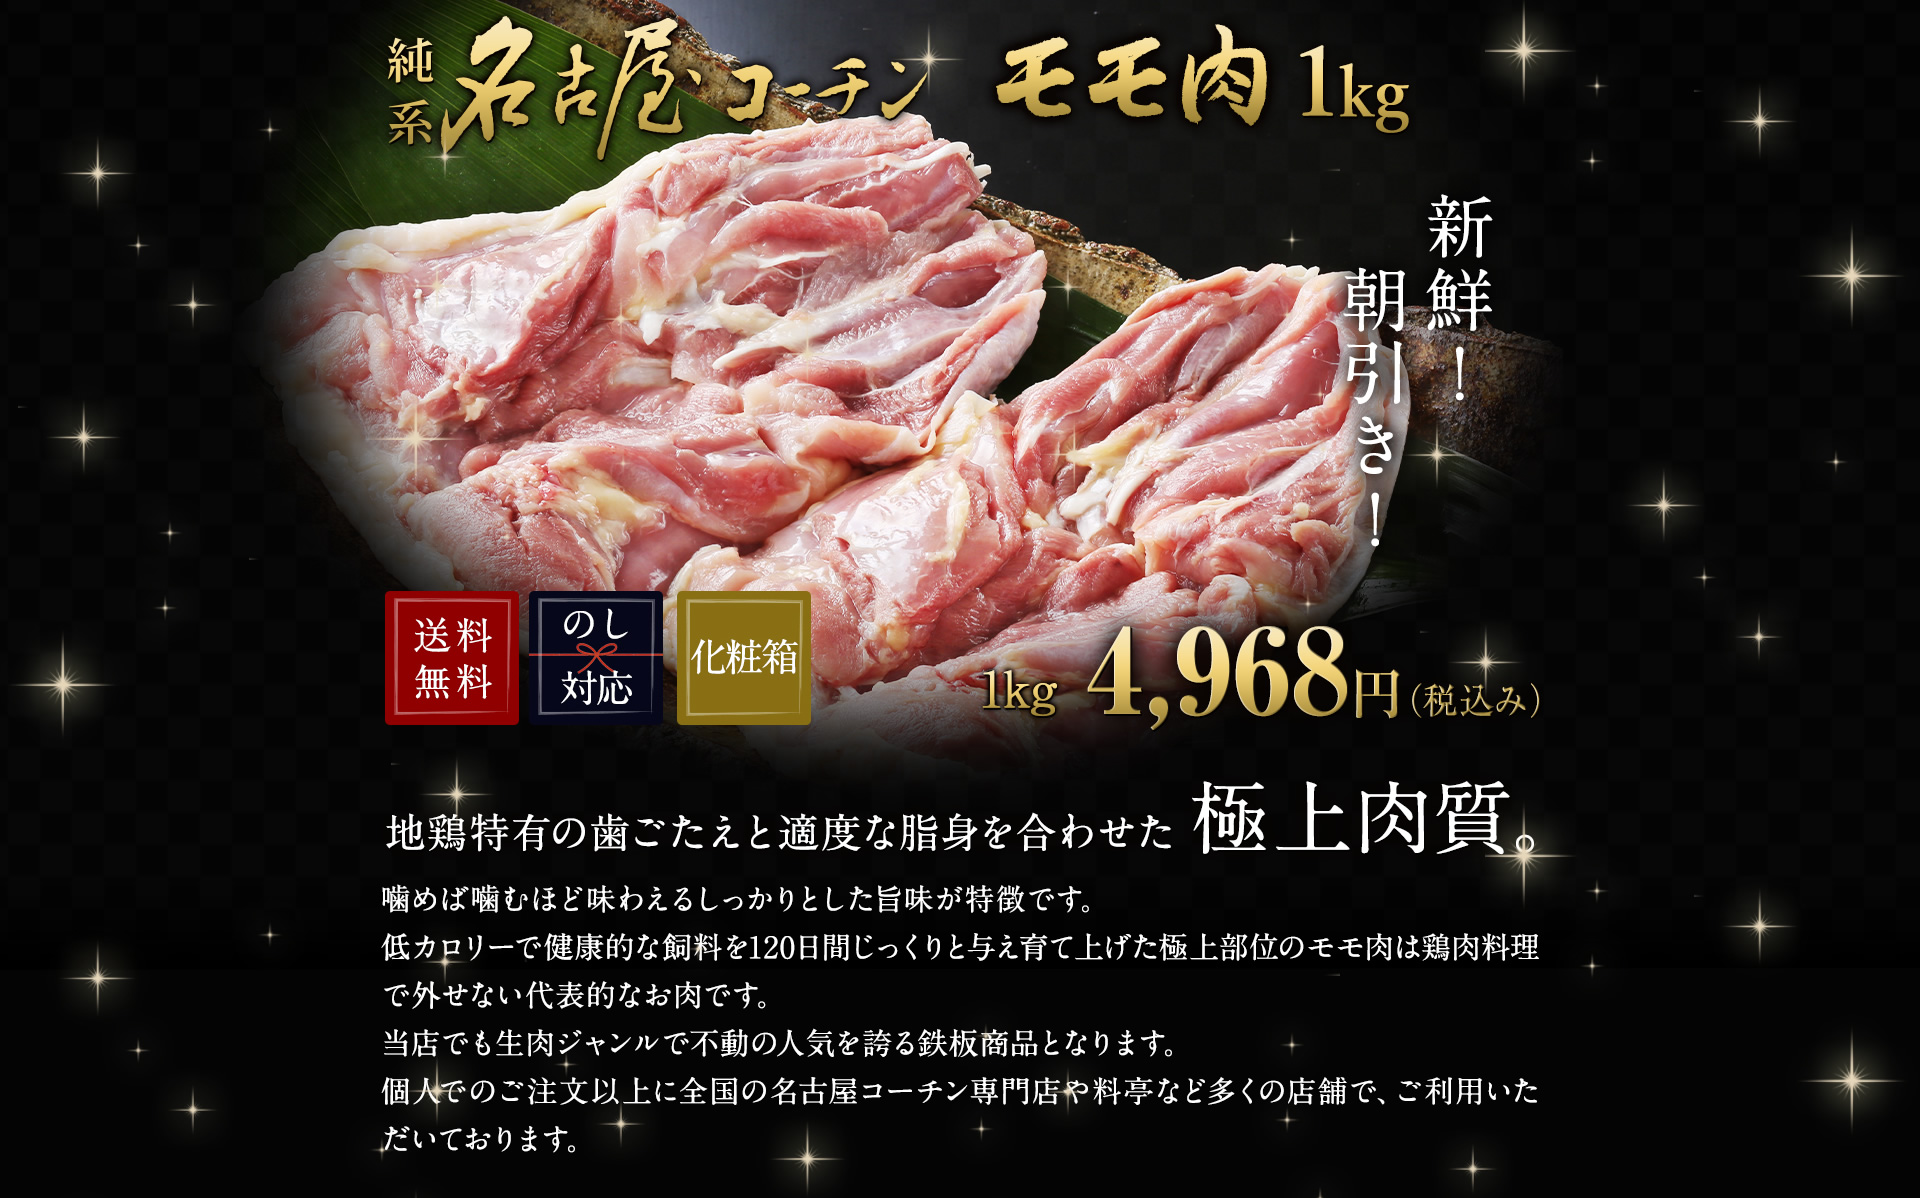 生肉 鶏肉 鮮度 業務用 朝引き 純系 名古屋コーチン モモ肉 1kg  観光地